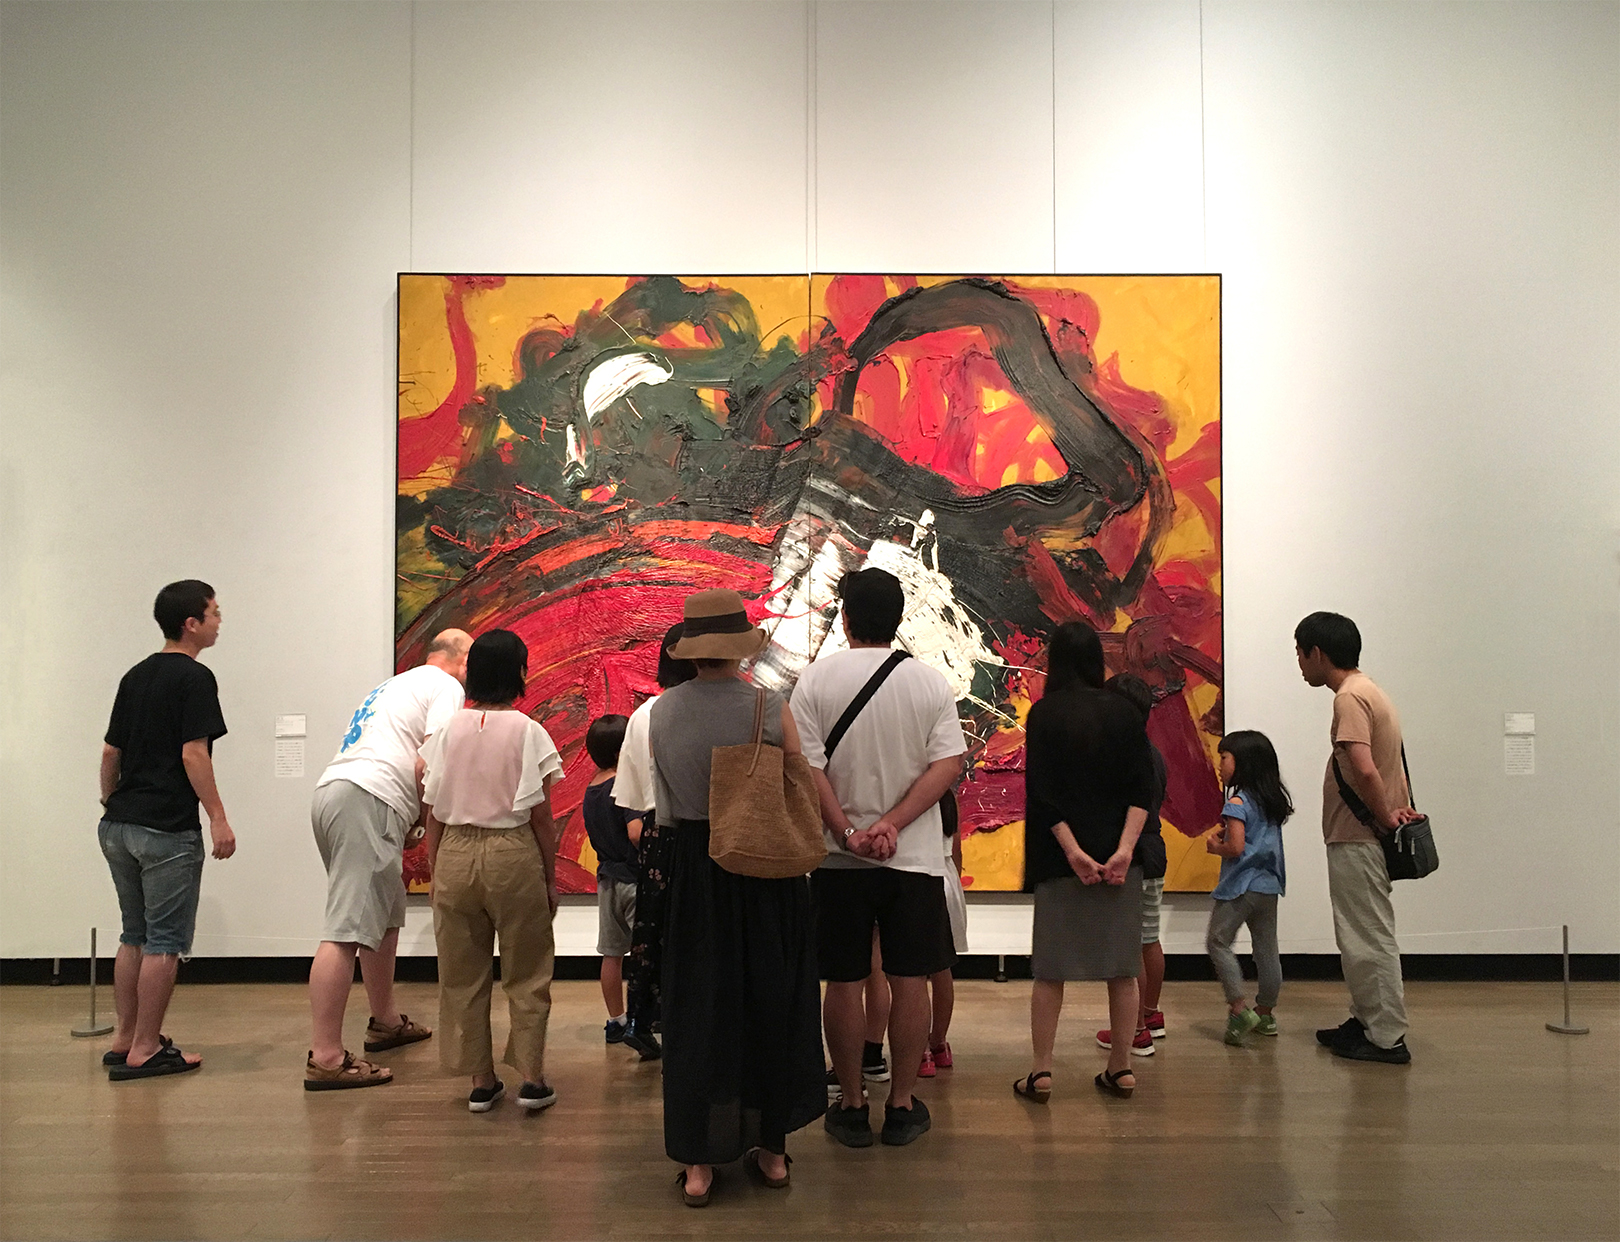 和歌山大学美術館部による「たまごせんせいとわくわくアートツアー」では、年齢もさまざまな参加者が一緒に作品を見て、多様な意見を共有する。